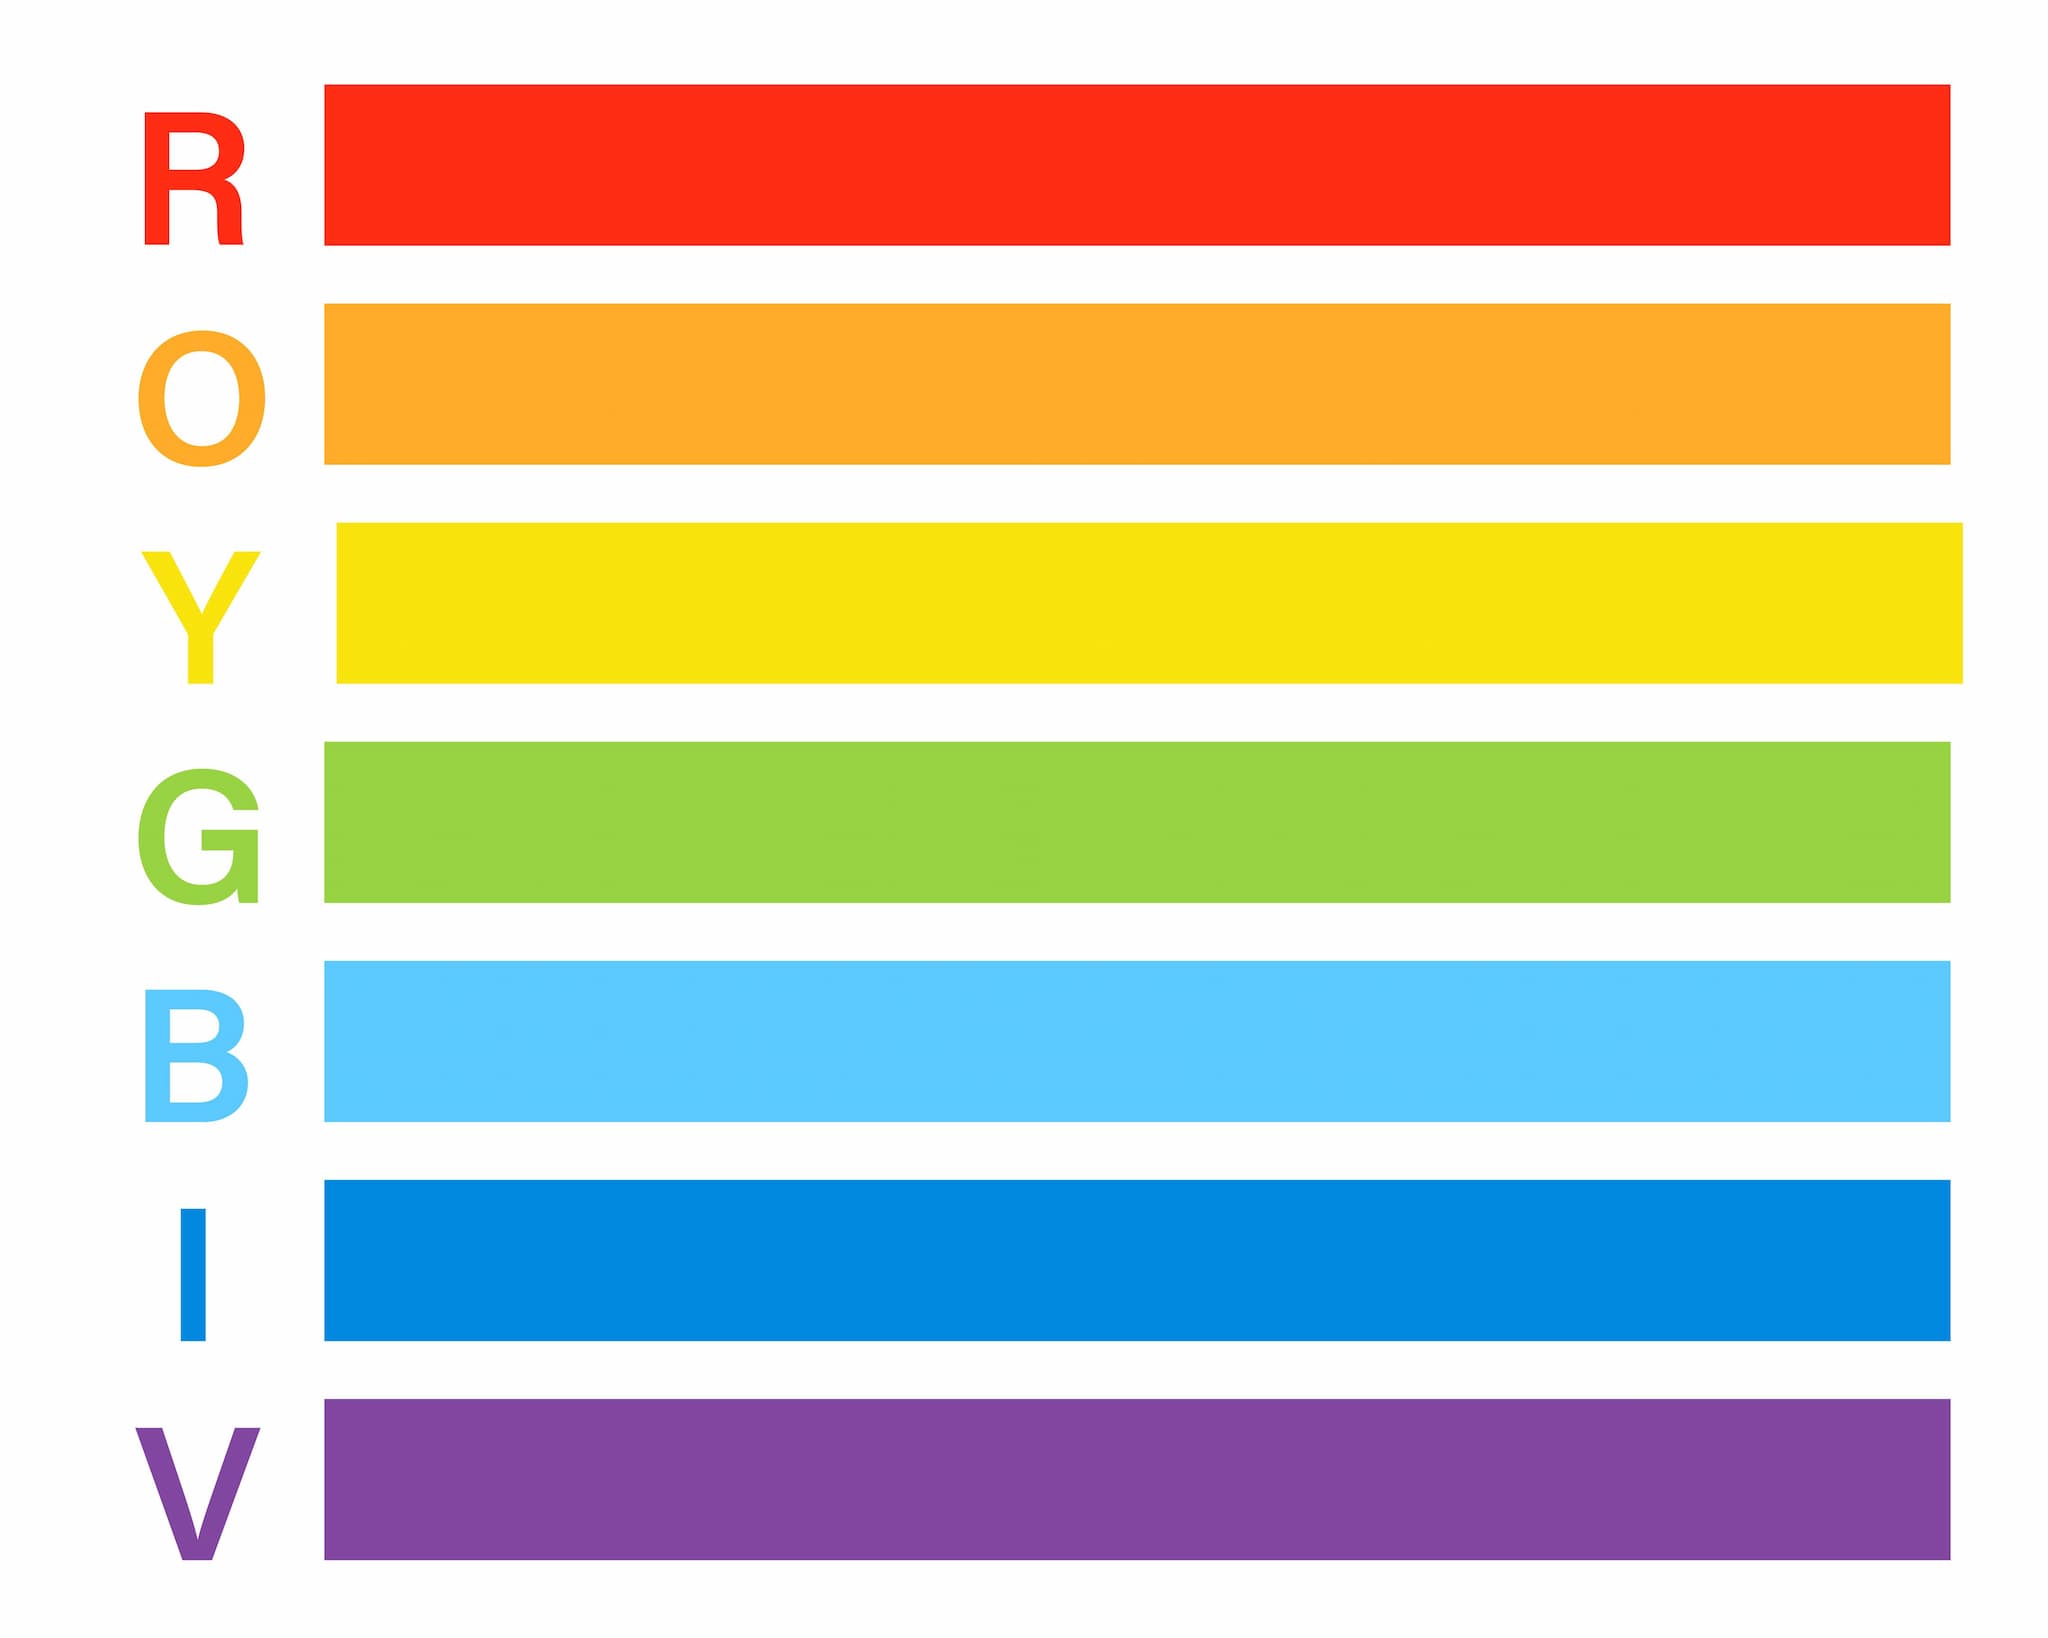 ROY G BIV représente l'ordre des couleurs de l'arc-en-ciel.